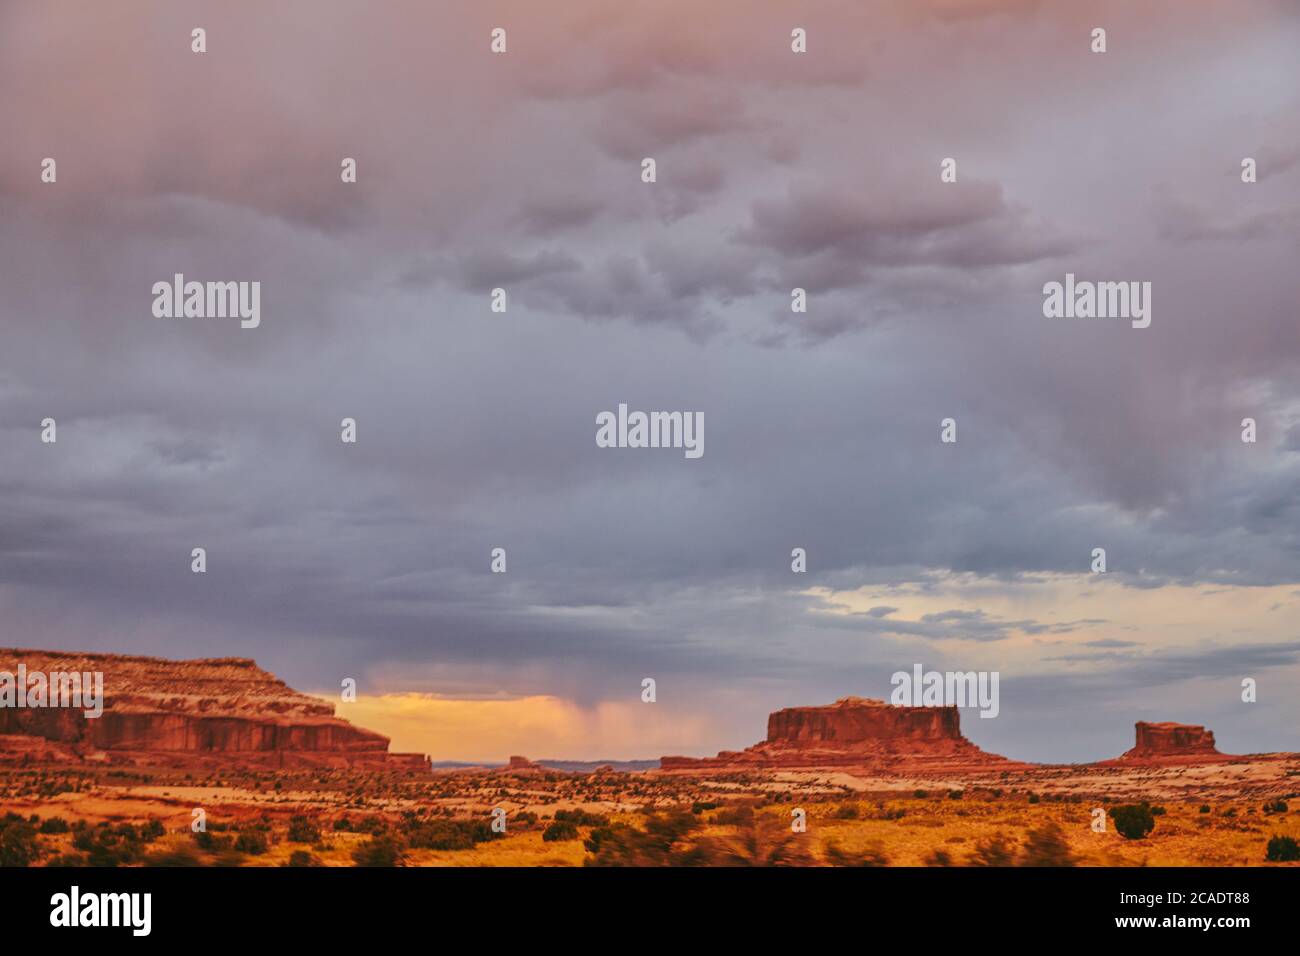 Golden sunset over desert landscape in Moab, Utah. Stock Photo